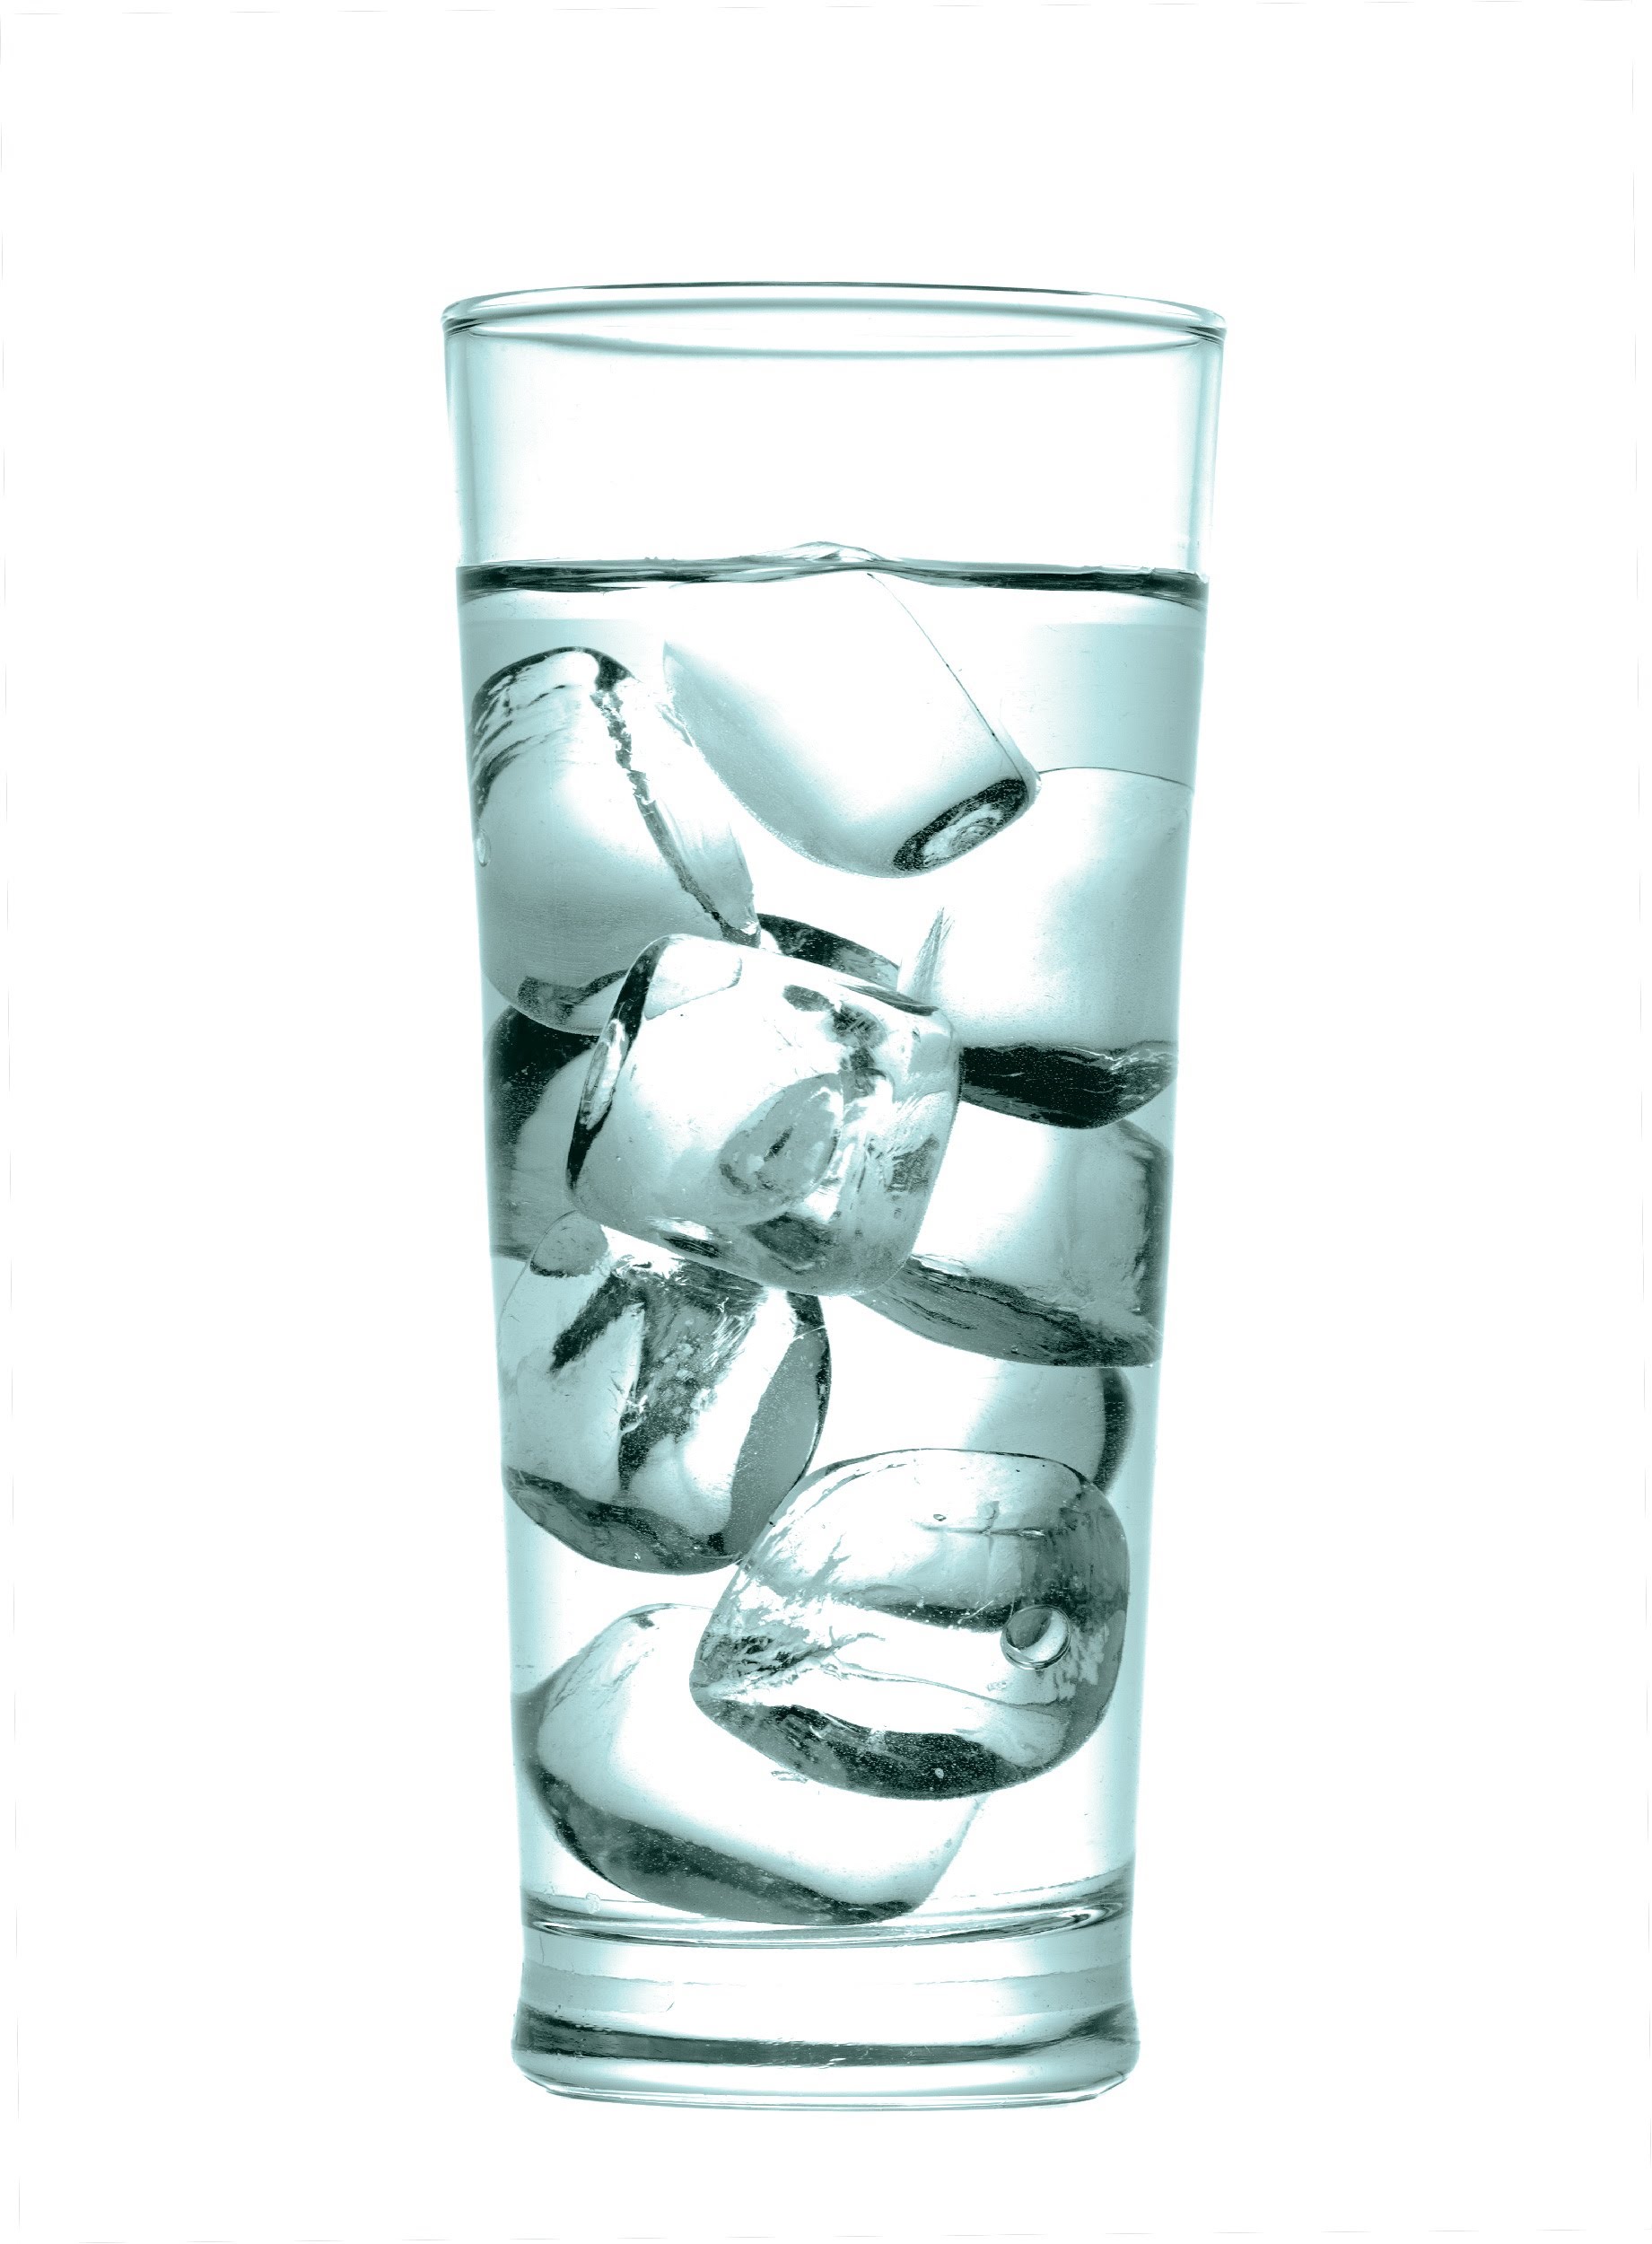 2672626-5744-glass-with-ice-w